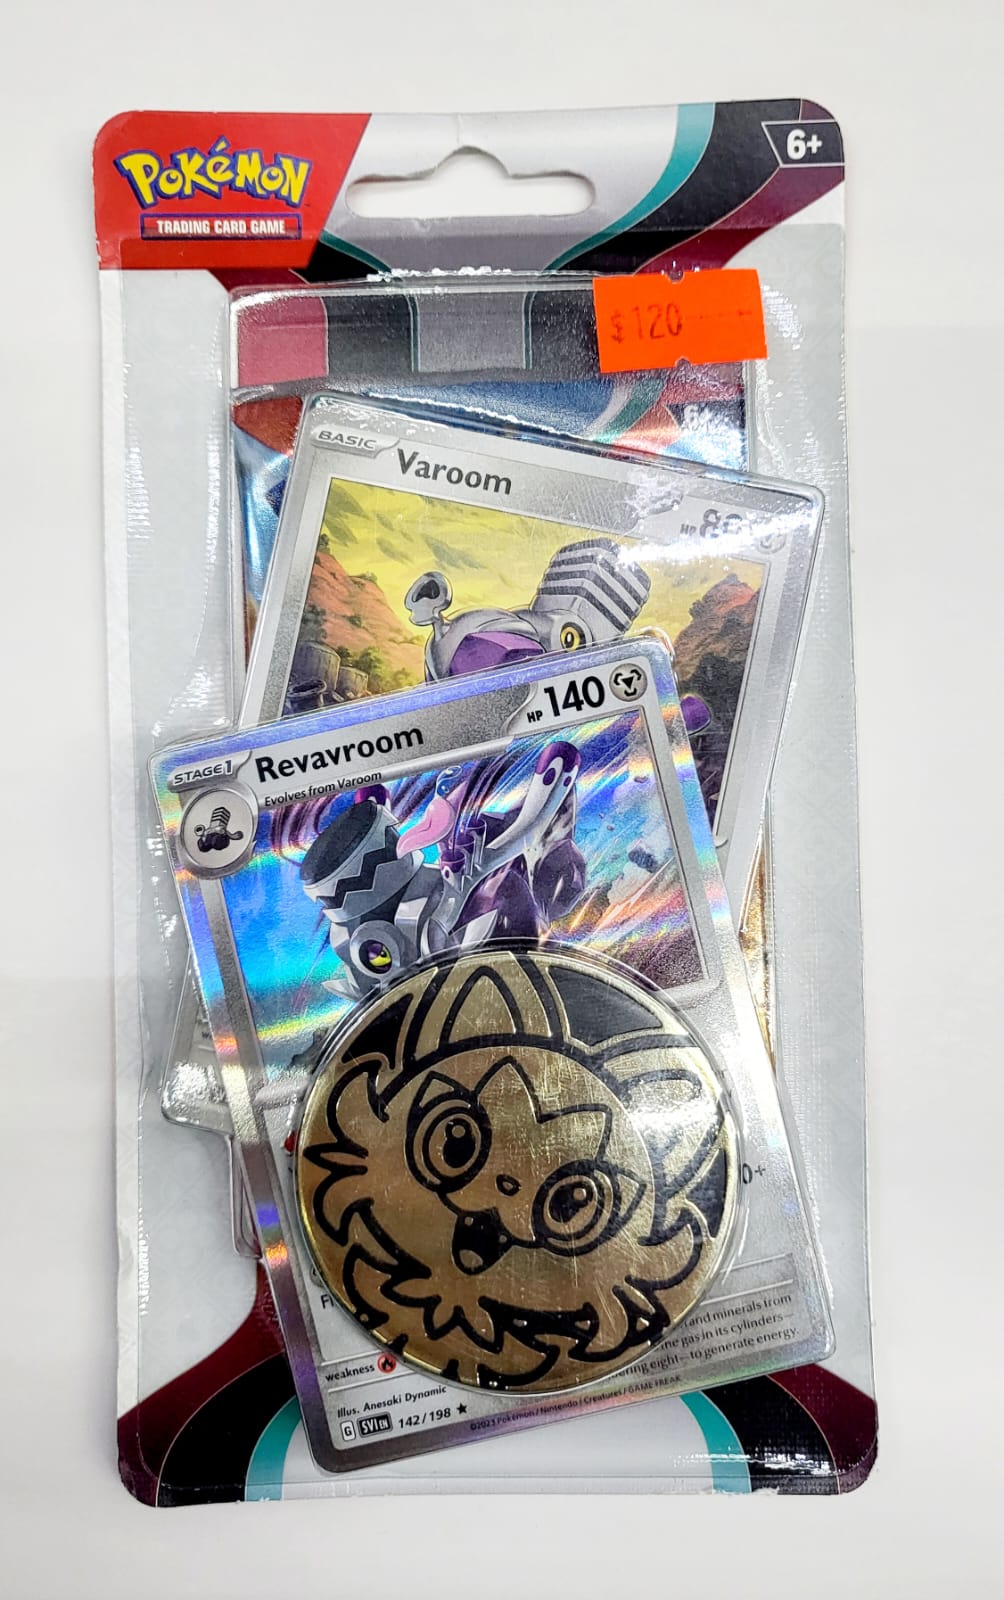 Pokemon TCG: Sobre booster mas dos cartas adicionales y una moneda decorativa